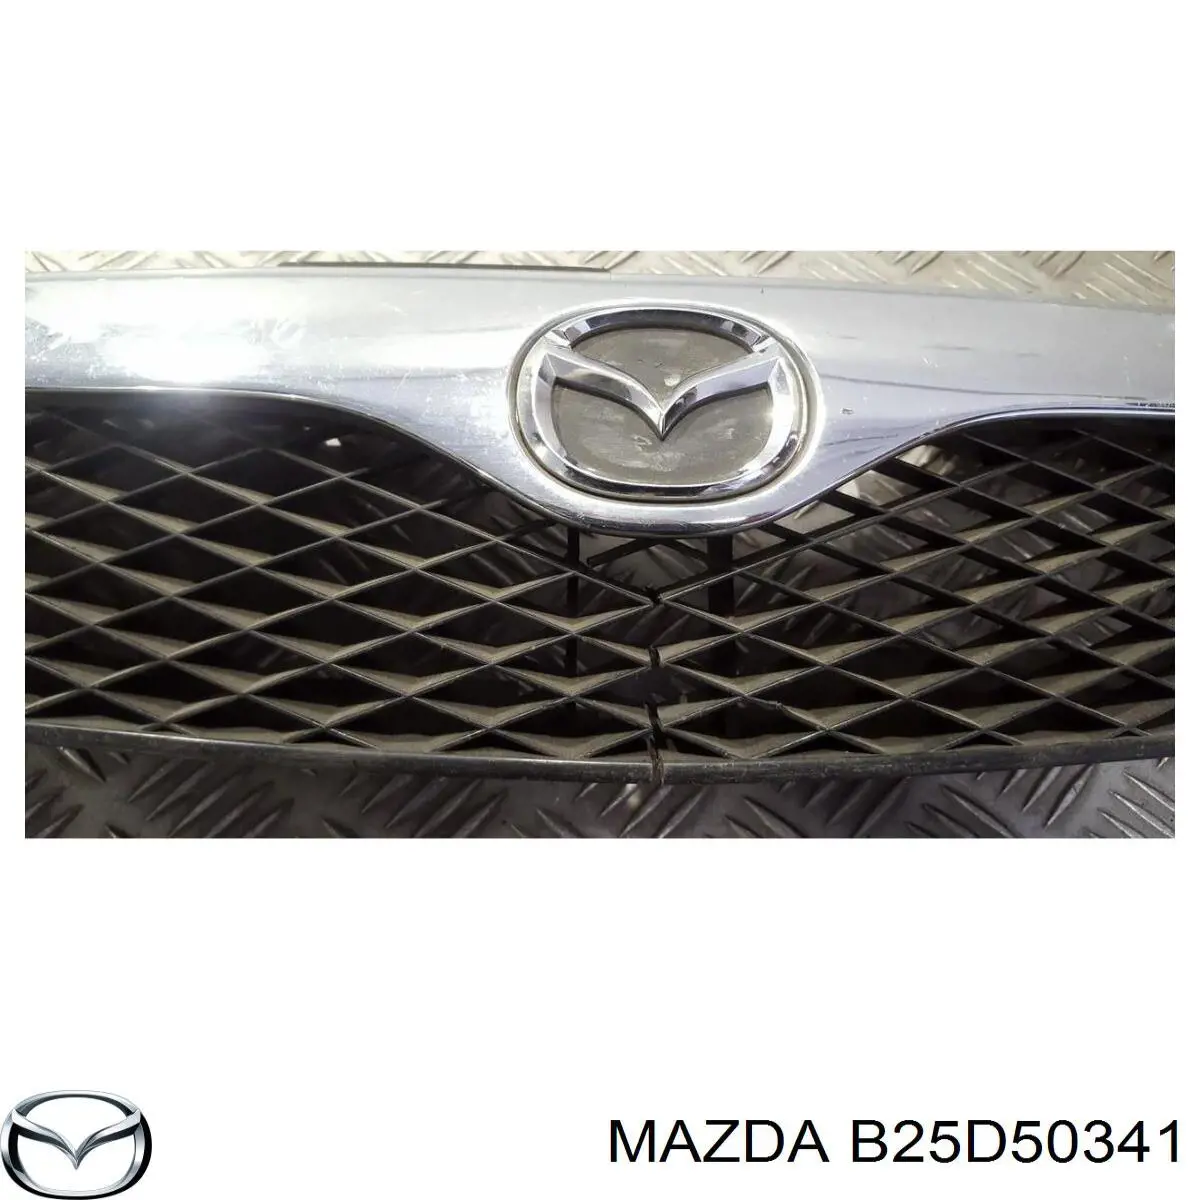 B25D50341 Mazda soporte de parachoques trasero derecho